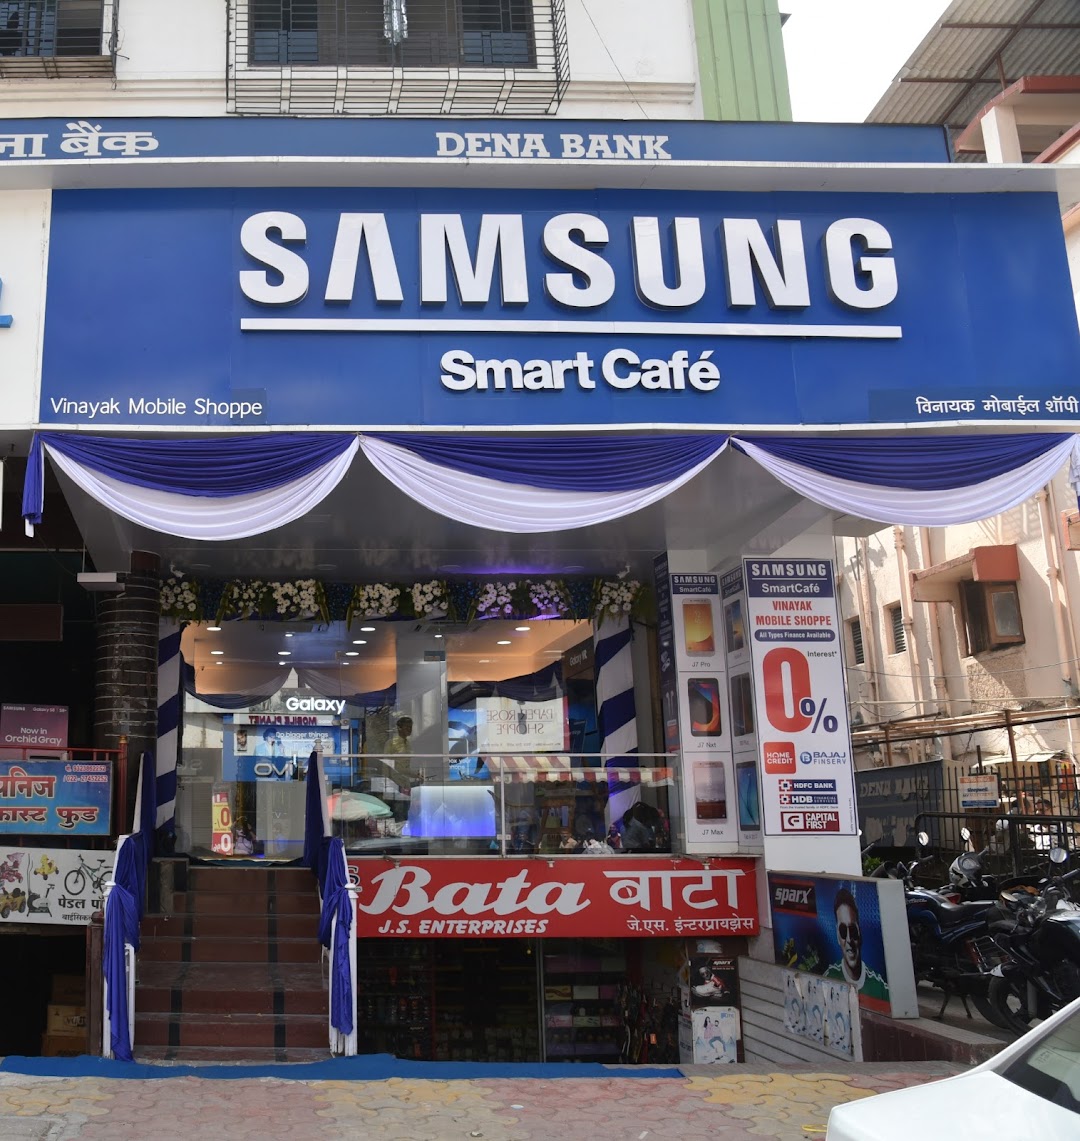 Samsung SmartCafé (Vinayak Mobile Shoppe - P)